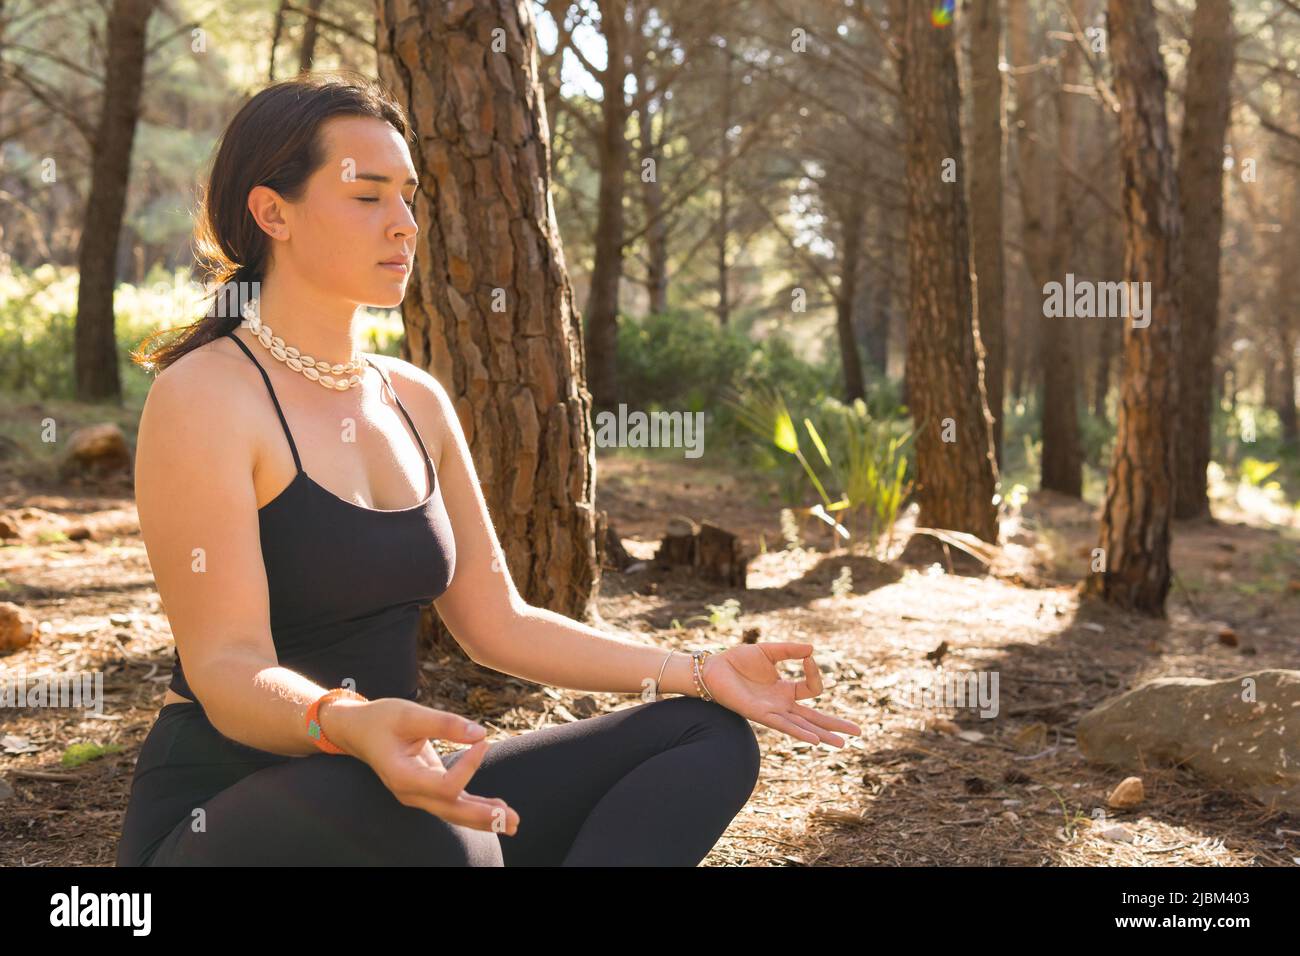 Belle jeune fille adulte en position lotus faisant du yoga au coucher du soleil dans une forêt entourée d'arbres. Gros plan, photo horizontale. Banque D'Images